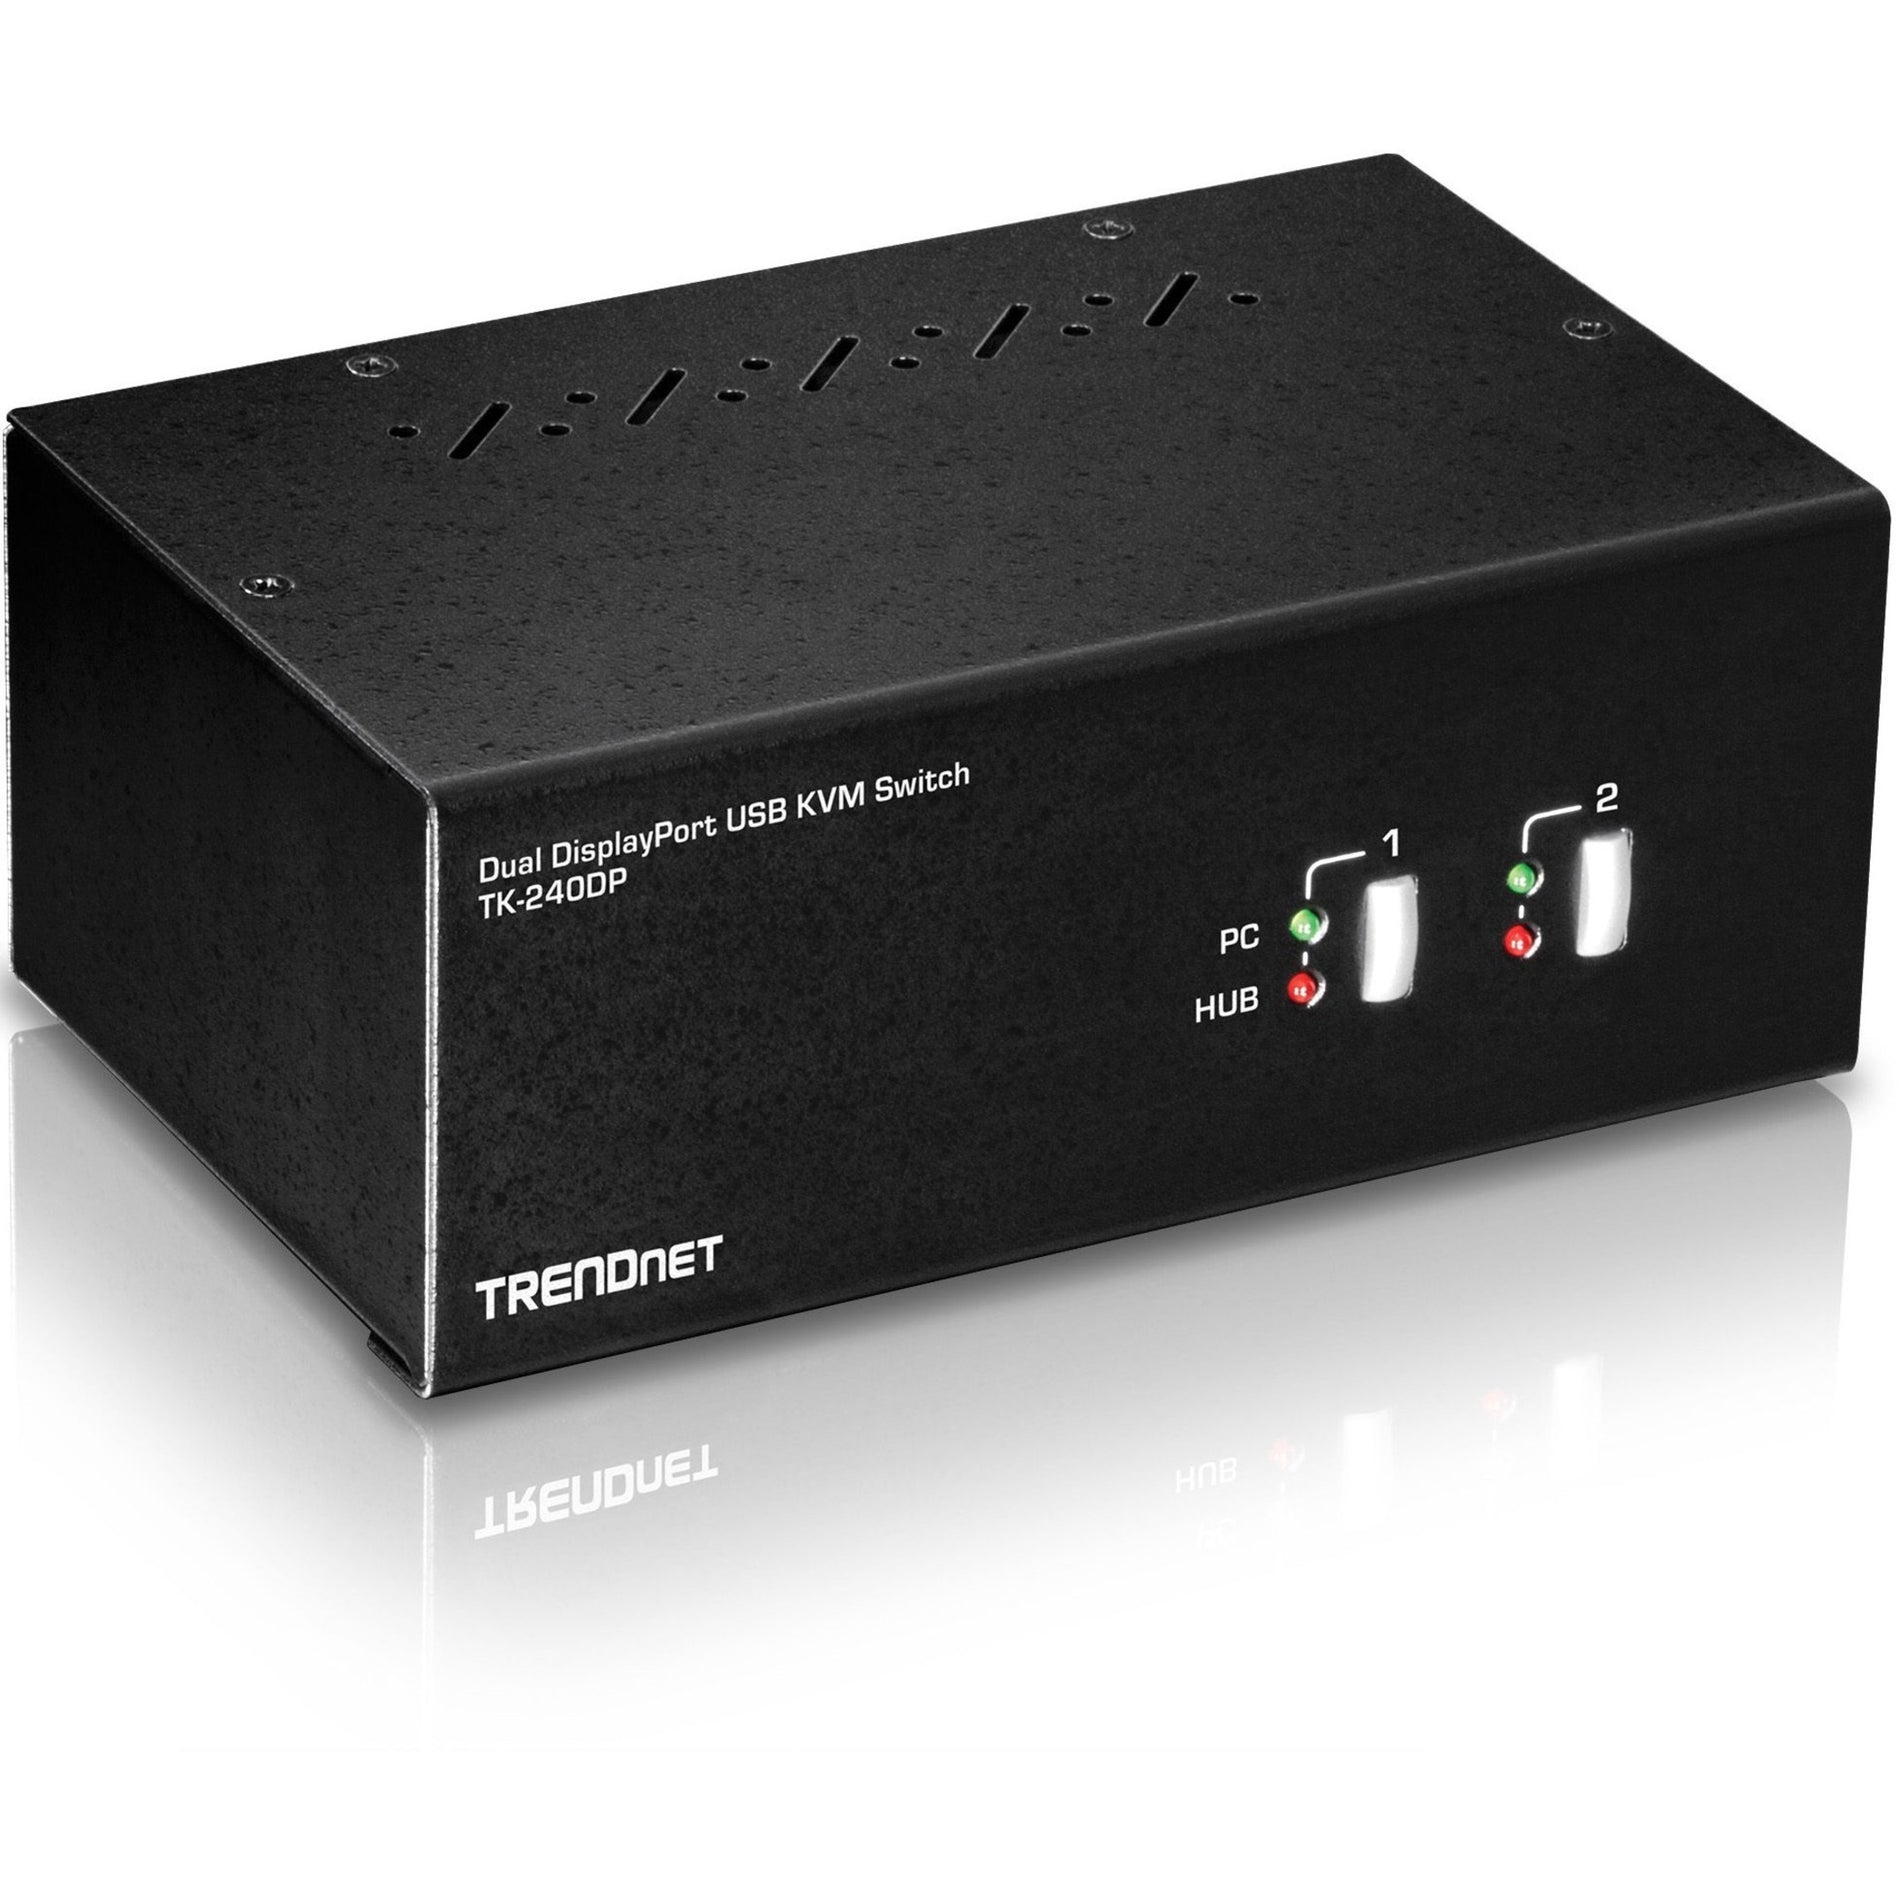 العلامة التجارية: TRENDnet مفتاح التحكم في وحدتي عرض باورت ديسبلاي 2، الدقة 3840 x 2160، متوافق مع متطلبات التأمين التجاري العالمي